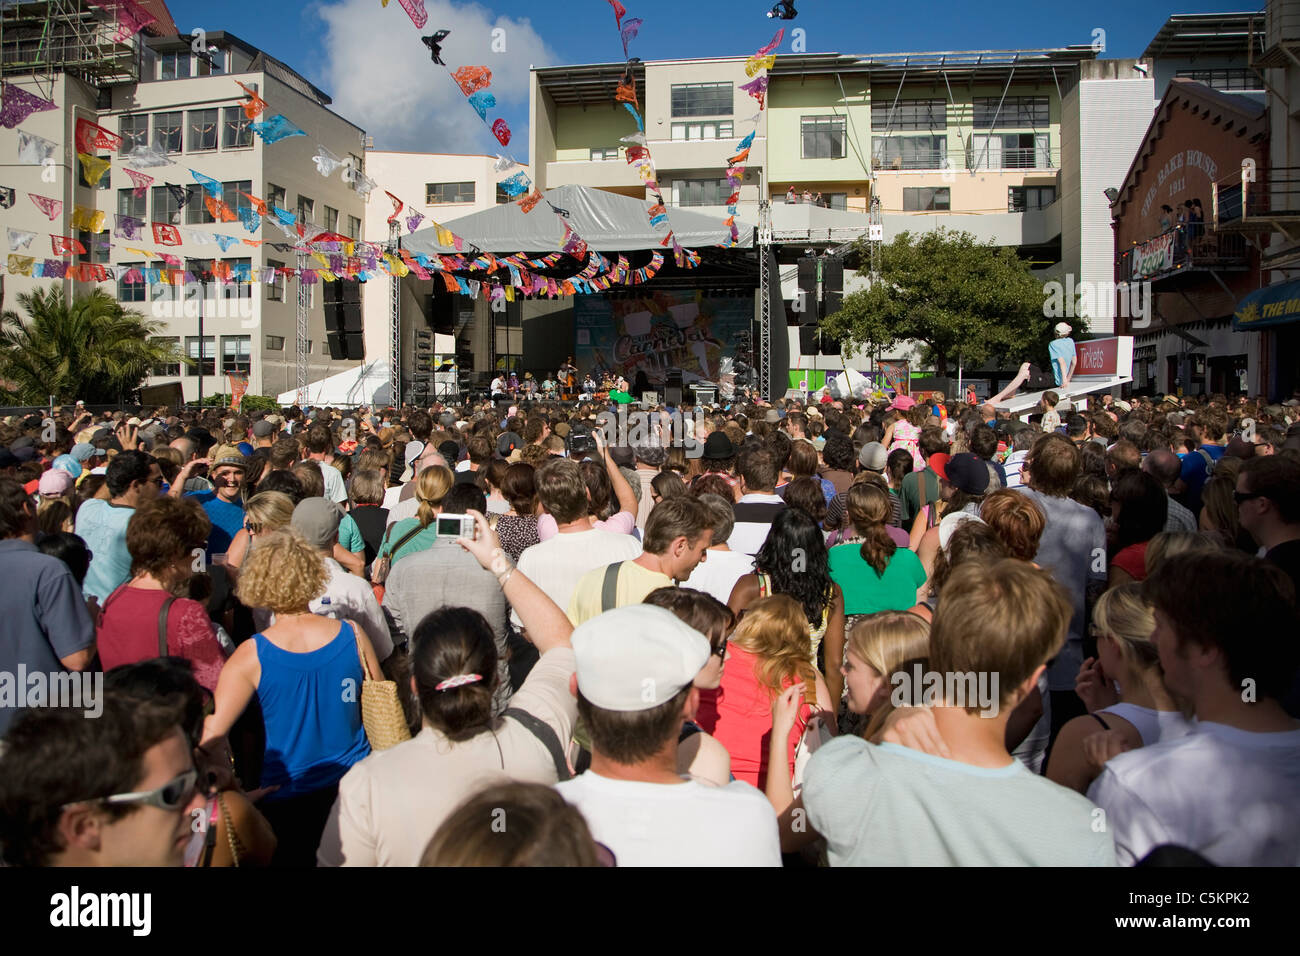 La folla di persone che guardano una banda eseguire su un palcoscenico all'aperto a una fiera di strada, Cuba Street, Wellington, Nuova Zelanda Foto Stock